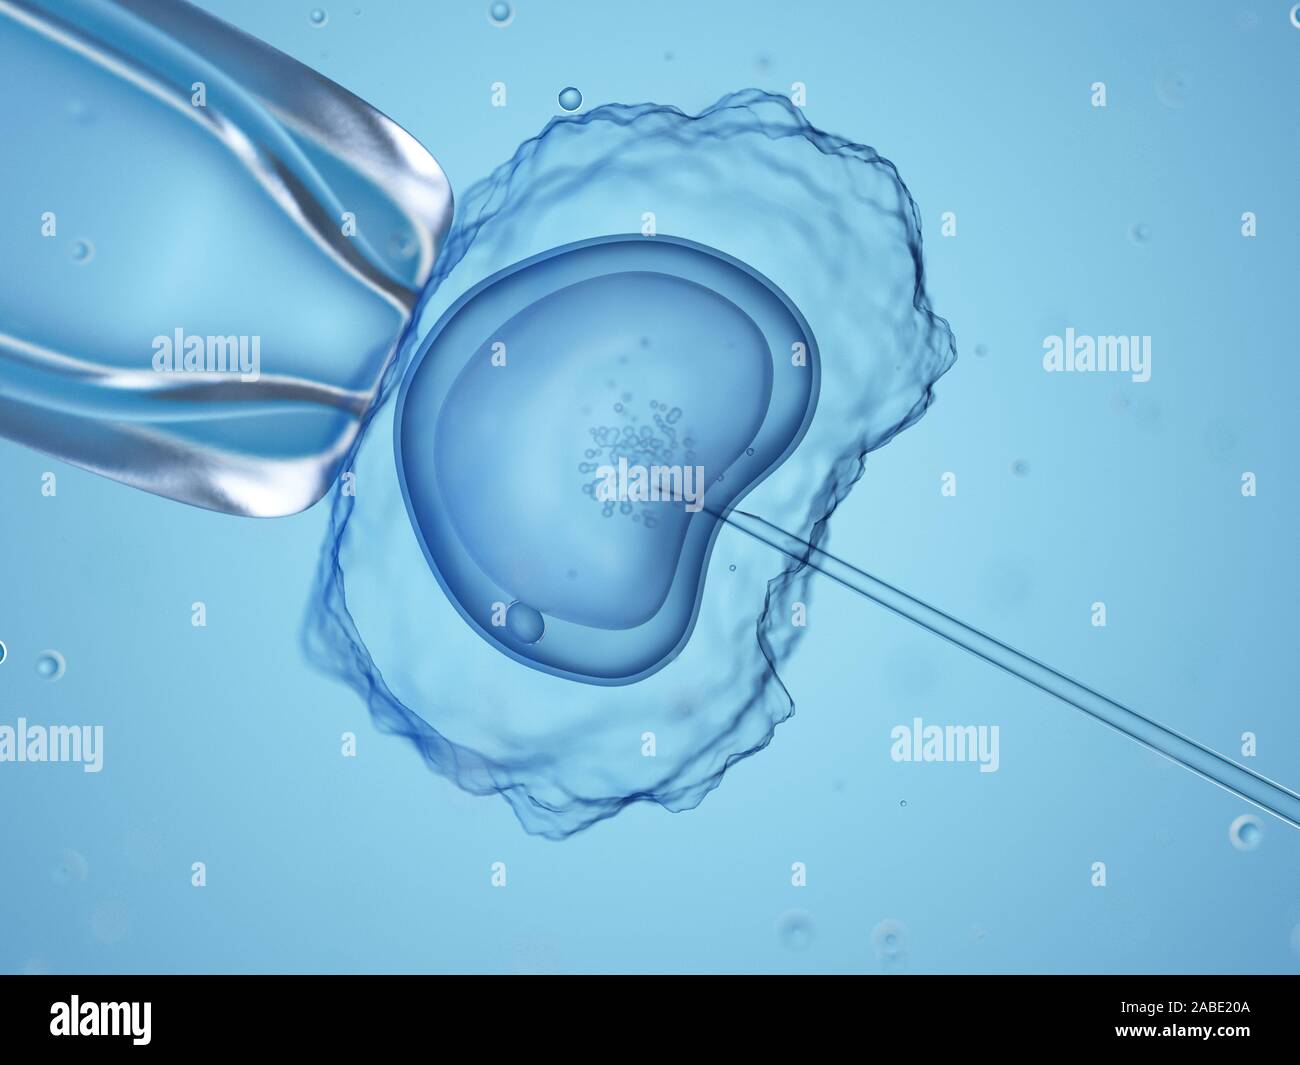 Médicalement en rendu 3d illustration exacte d'une fécondation in vitro Banque D'Images